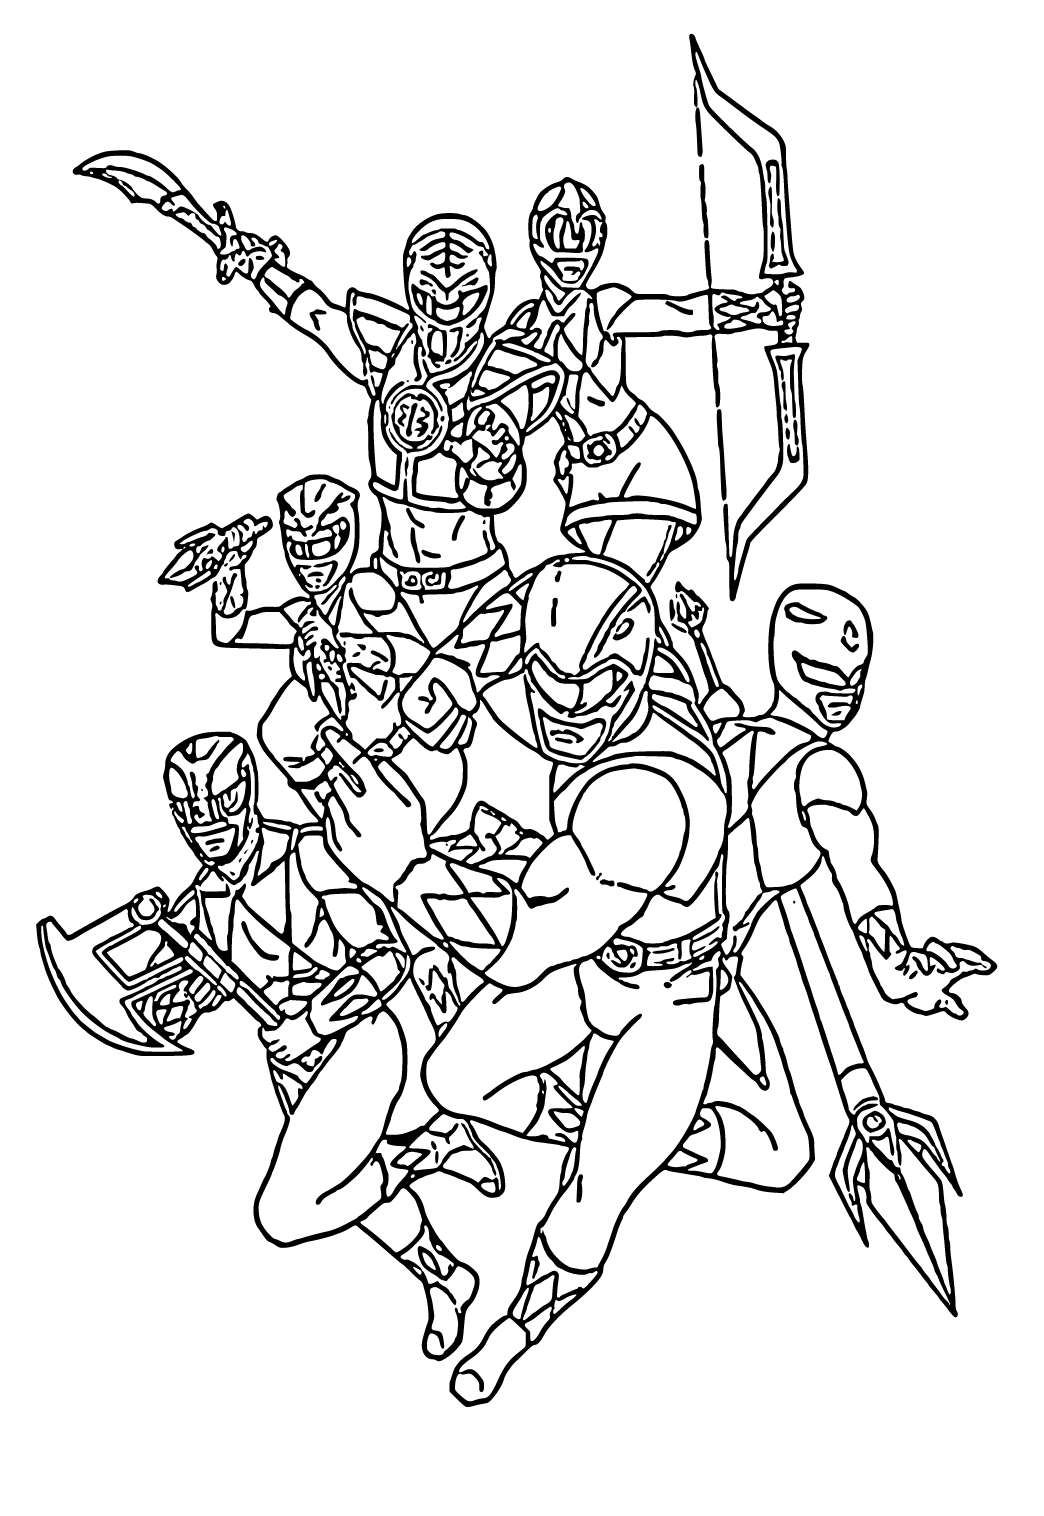 Dibujo e Imagen Power Rangers Caracteres para Colorear y Imprimir Gratis  para Adultos, Niñas y Niños 